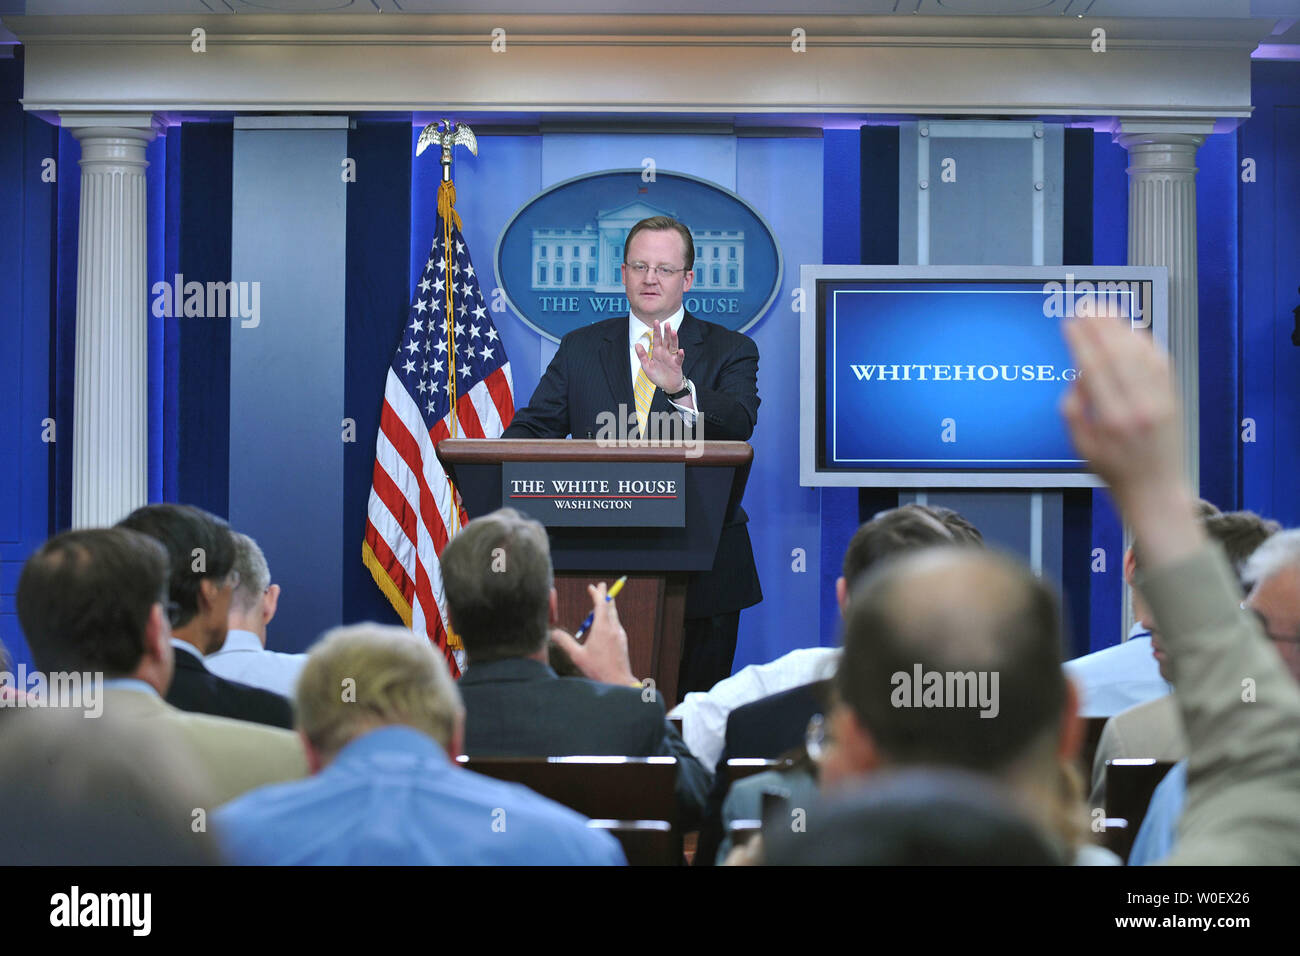 Der Pressesprecher des Weißen Hauses, Robert Gibbs, spricht über die Schweinepest während seiner täglichen Pressekonferenz im Weißen Haus in Washington am 27. April 2009 Influenza. (UPI Foto/Kevin Dietsch) Stockfoto